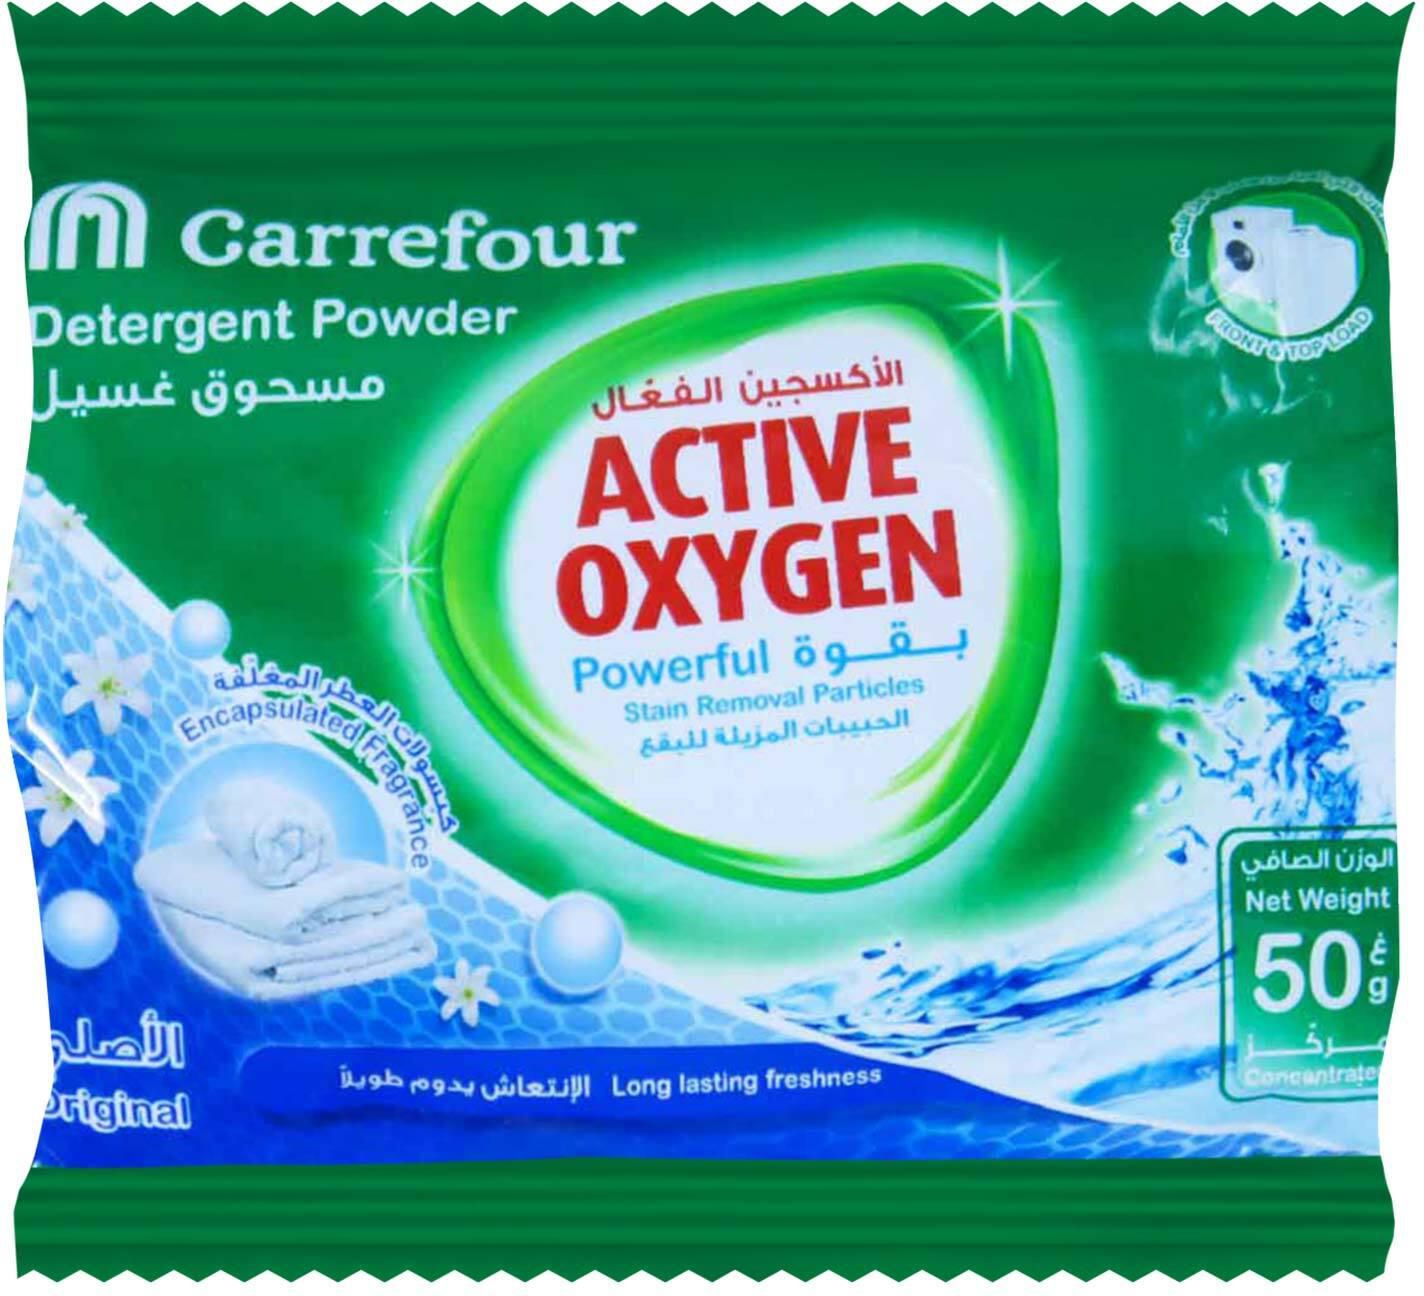 Carrerour detergent powder lavender 2 in 1 - 50 g